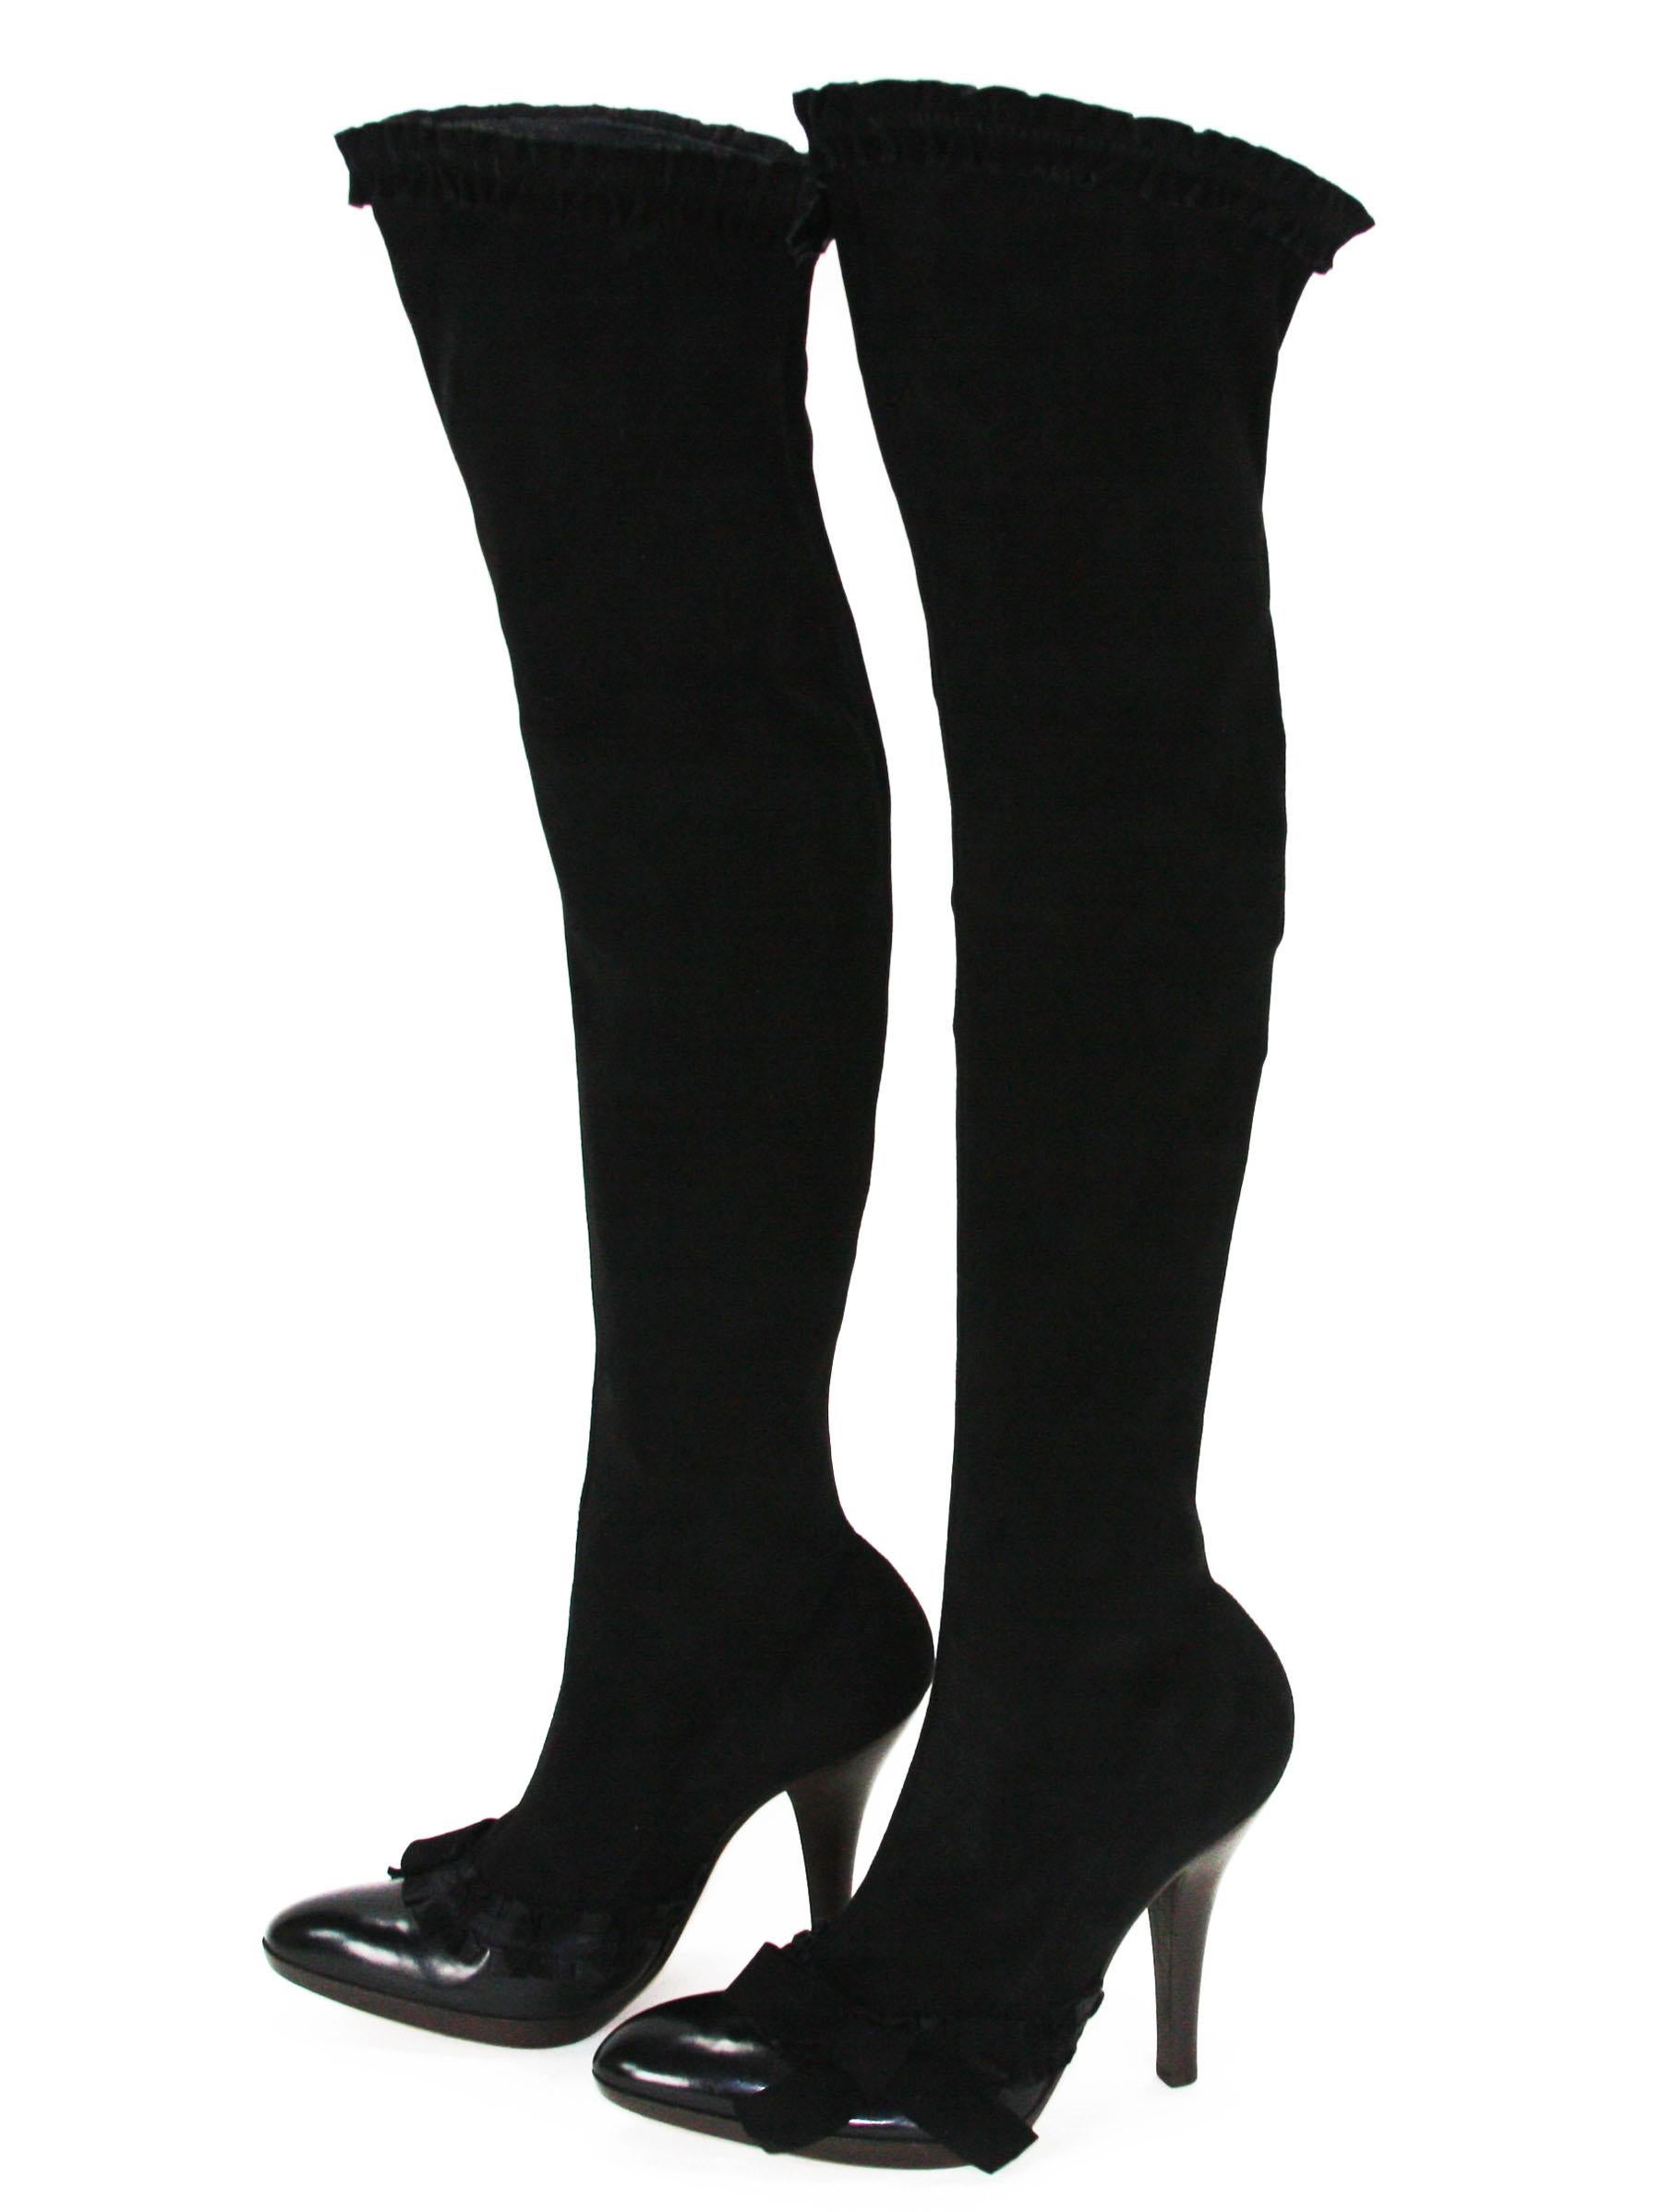 Noir Nouveauté Tom Ford pour Yves Saint Laurent F/W 2001 AD Campaign Over Knee Boots 38 - 8  en vente